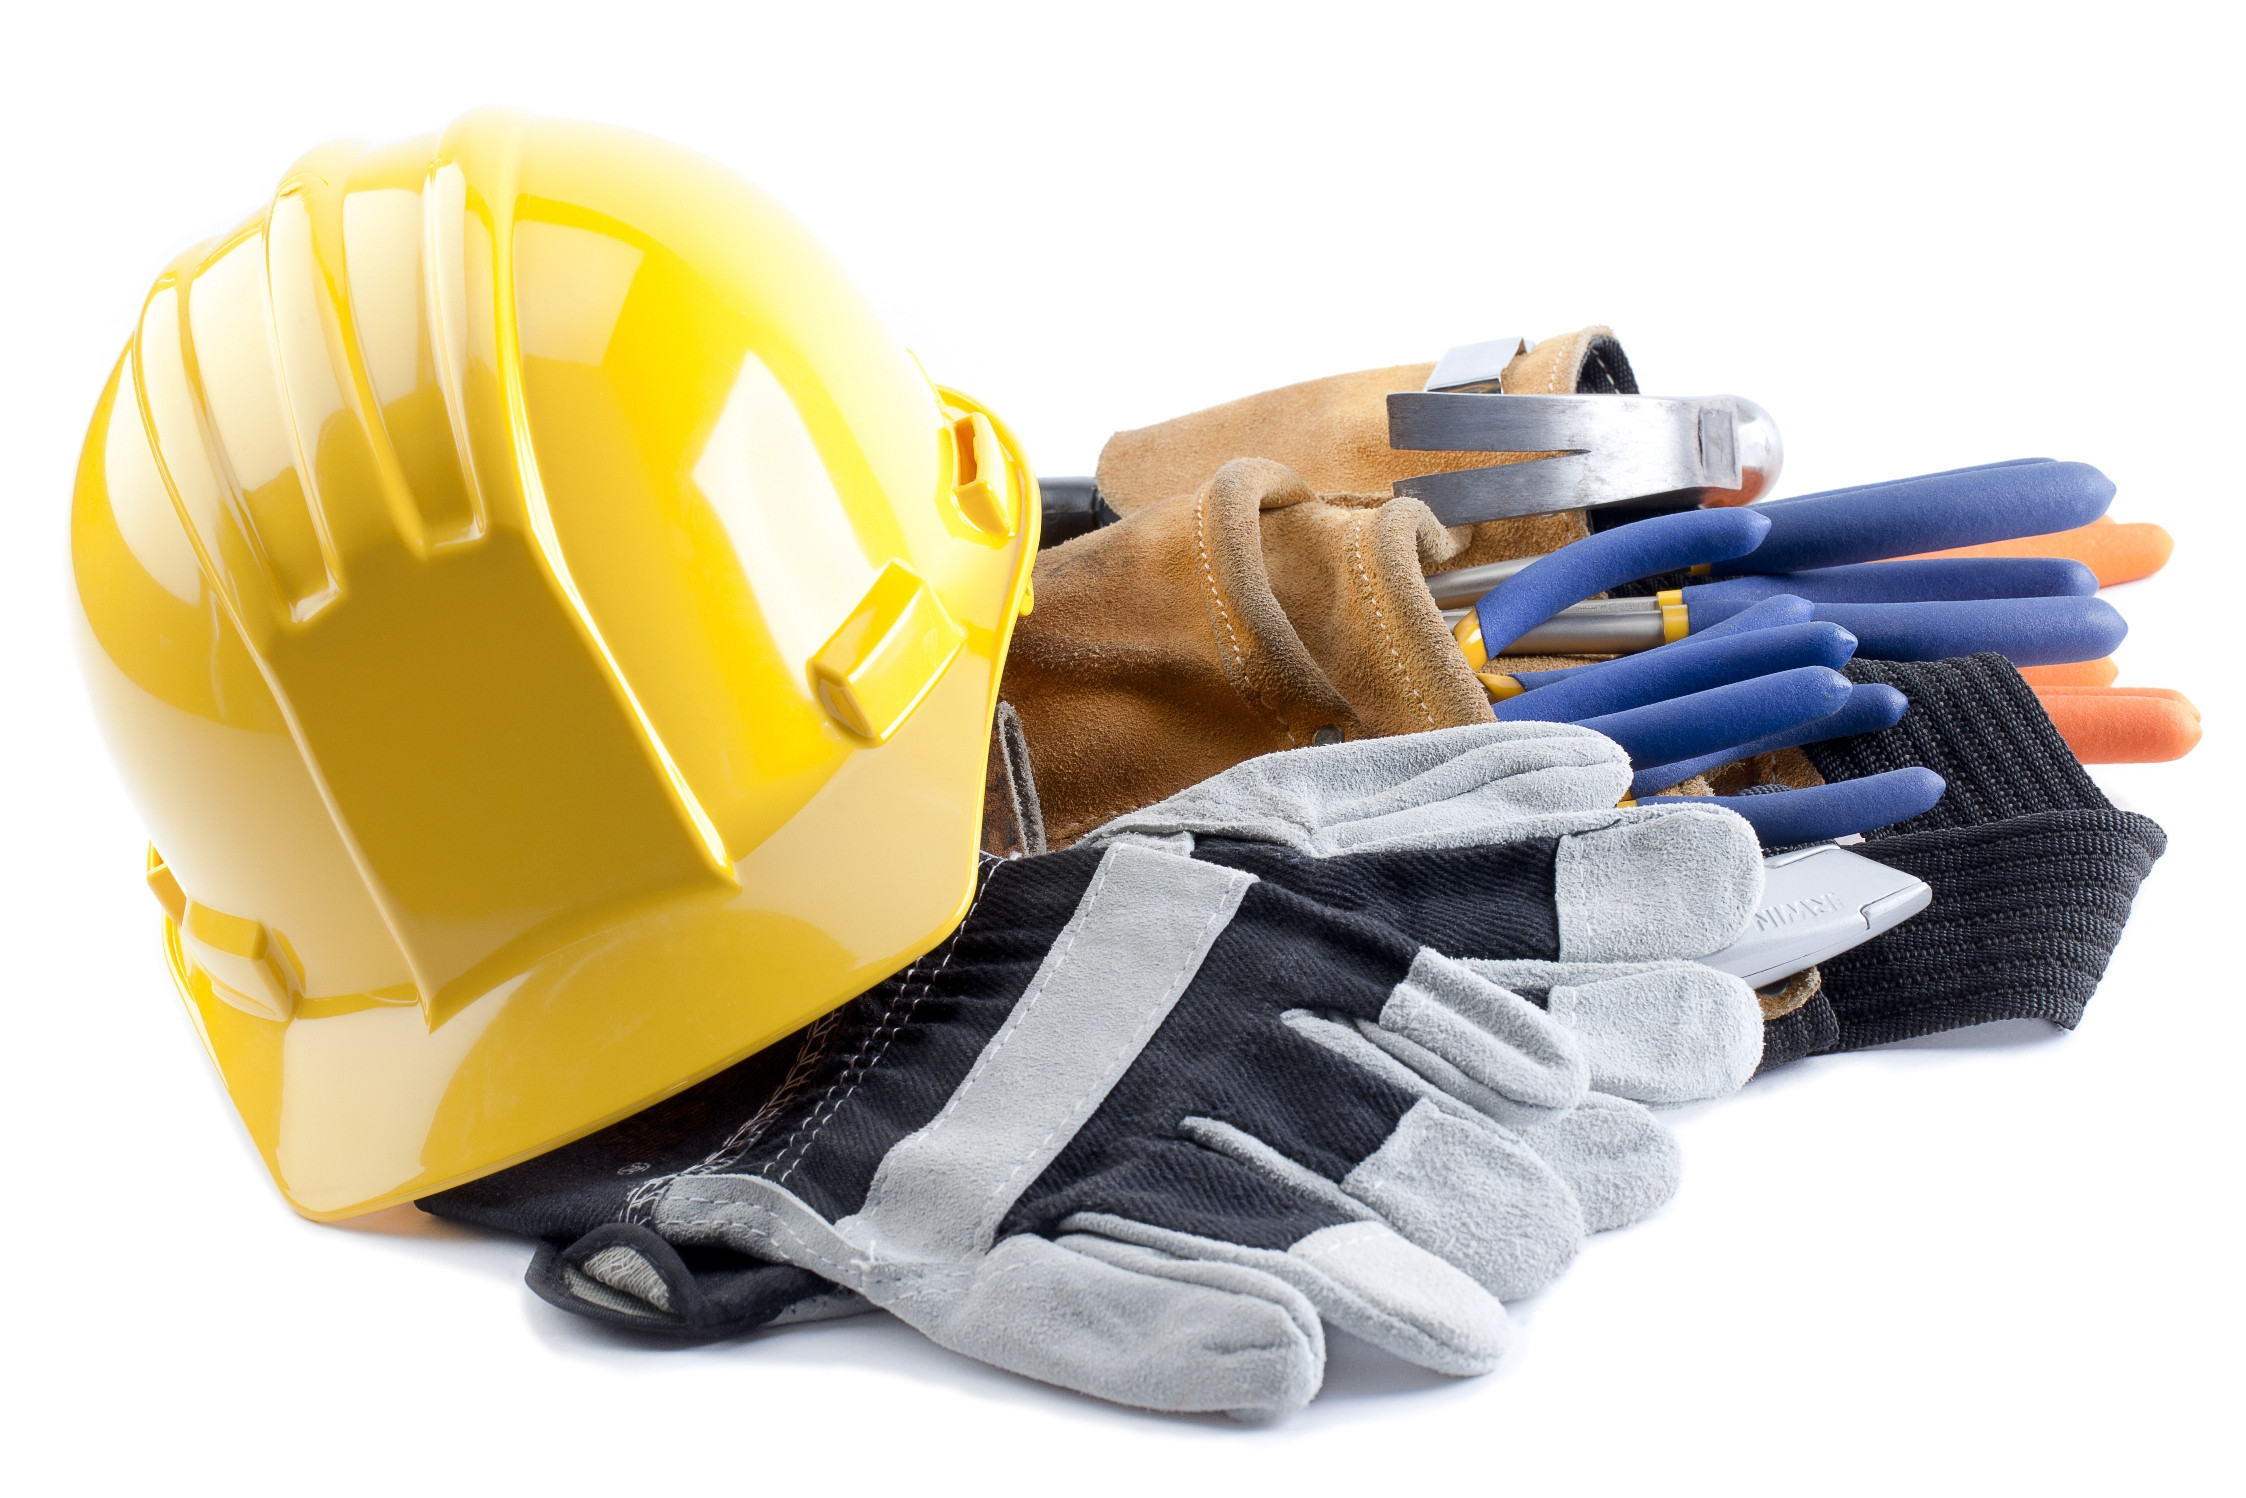 Concrete Contractors – Important Jobs For Concrete Repair And Design